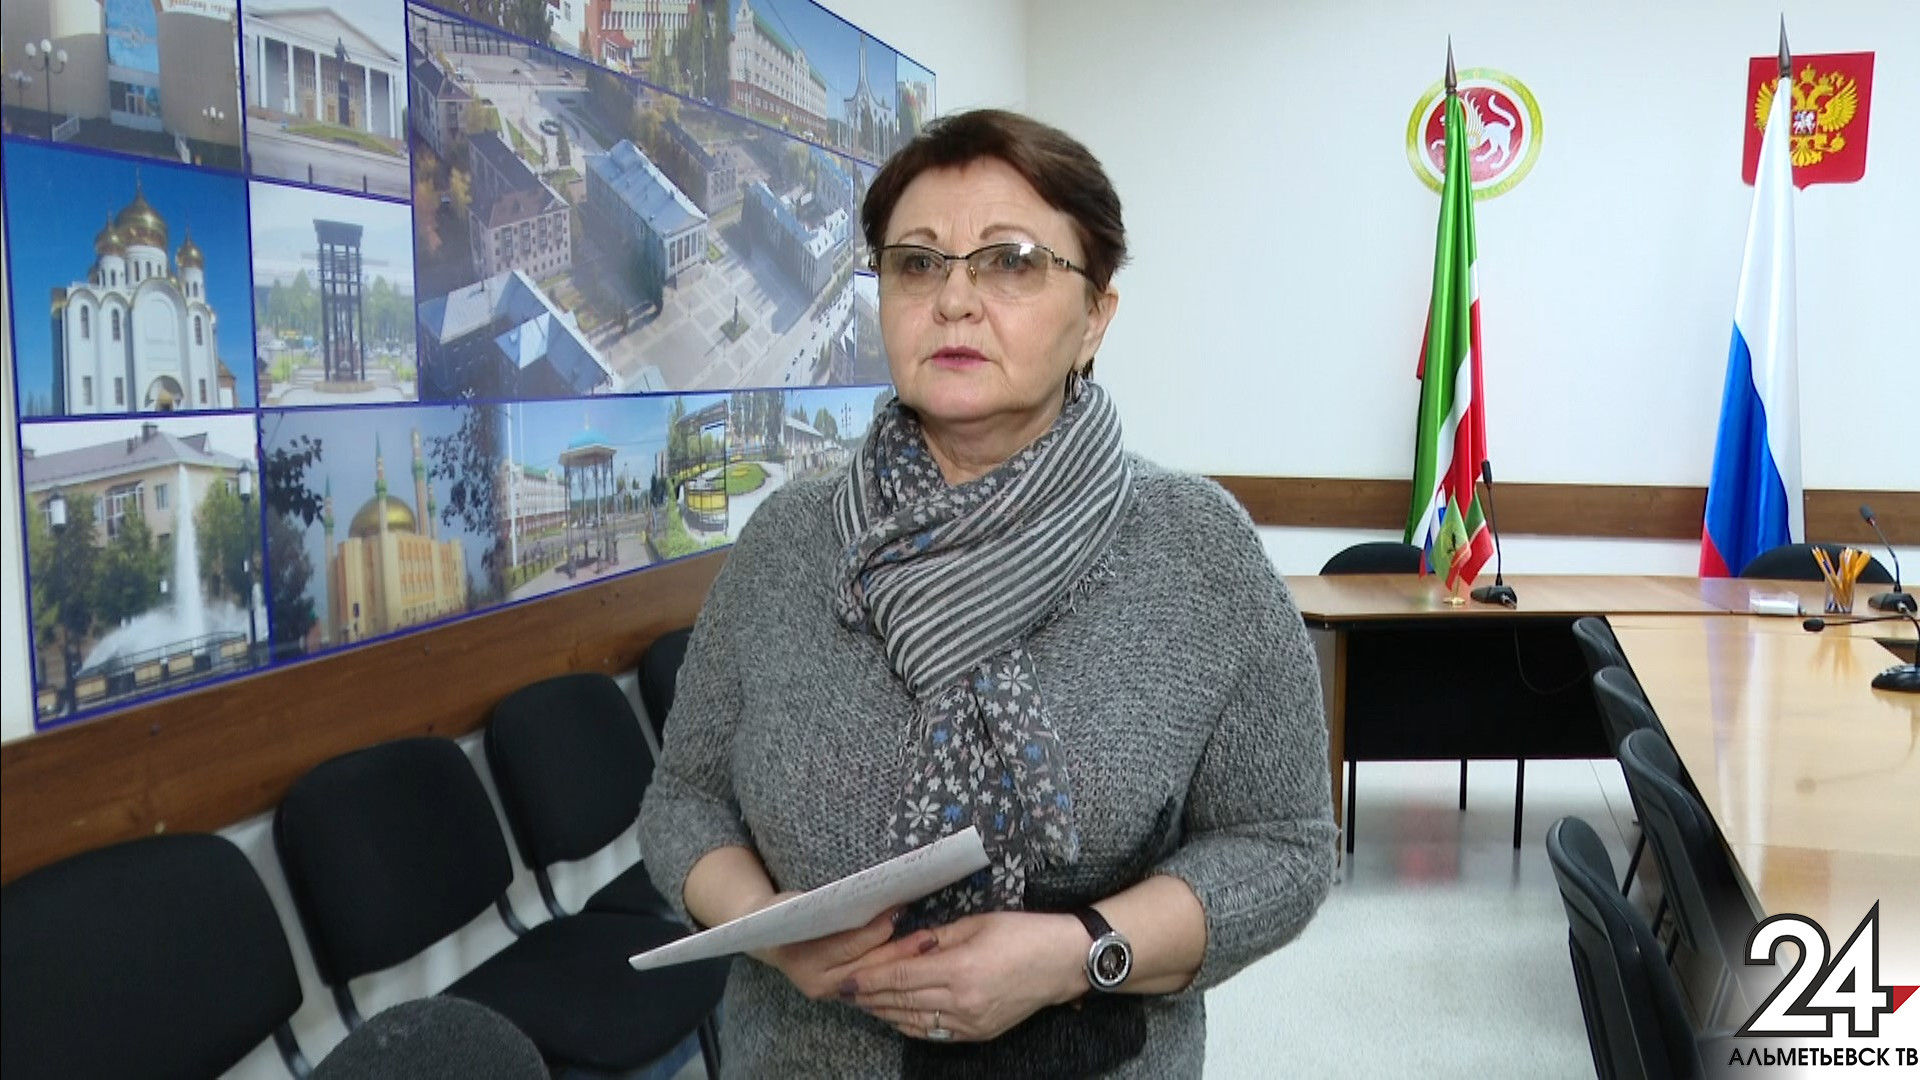 Жительница Альметьевска предложила установить стелу на проспекте Зарипова